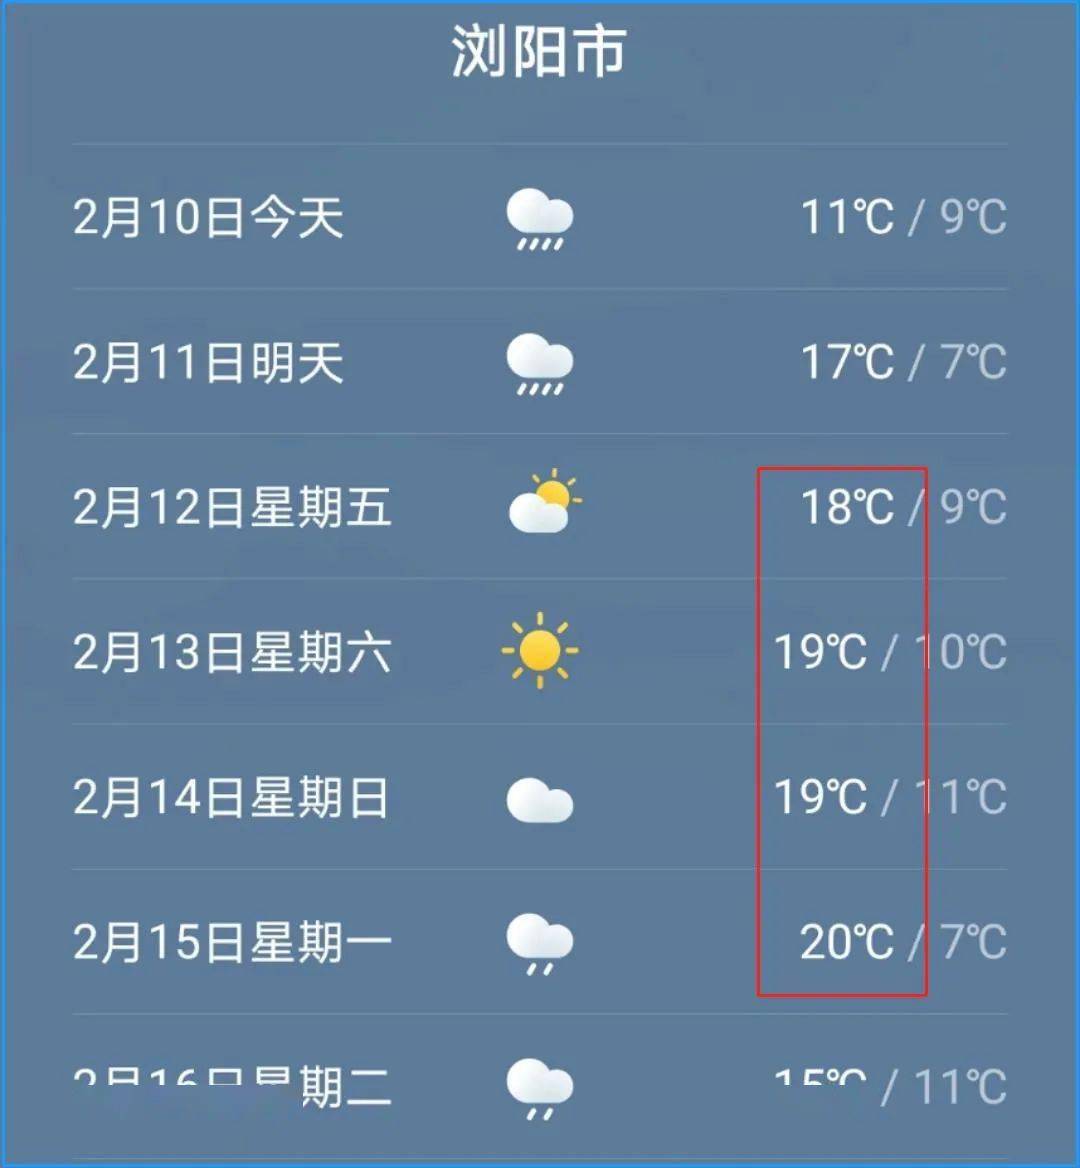 春节期间,浏阳的最高气温将达到20℃专业天气软件的天气预报显示祝